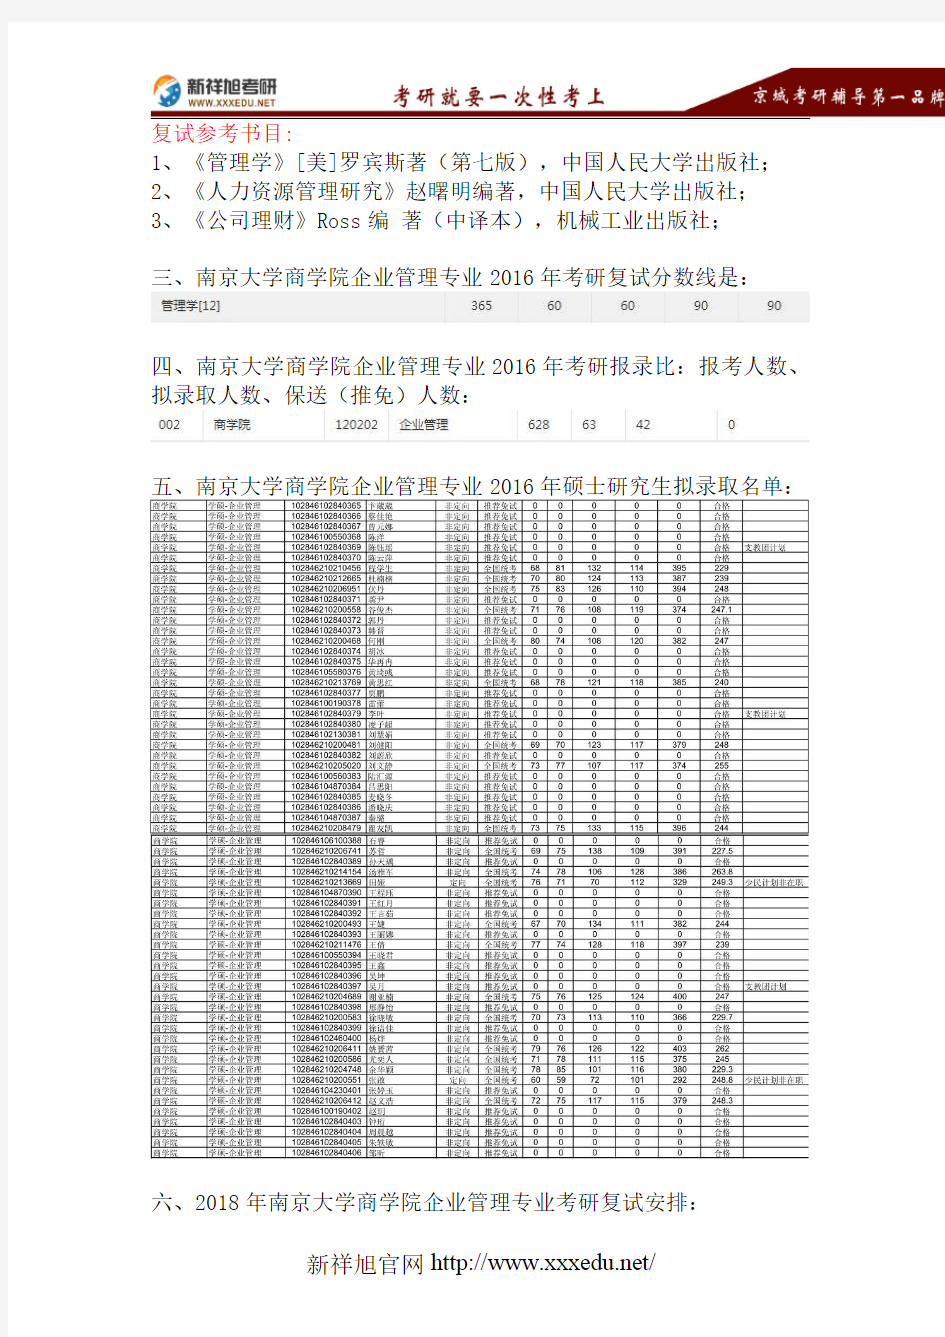 2018南京大学企业管理考研考试科目、招生人数、参考书目、复试分数线、报录比、拟录取名单、复试安排